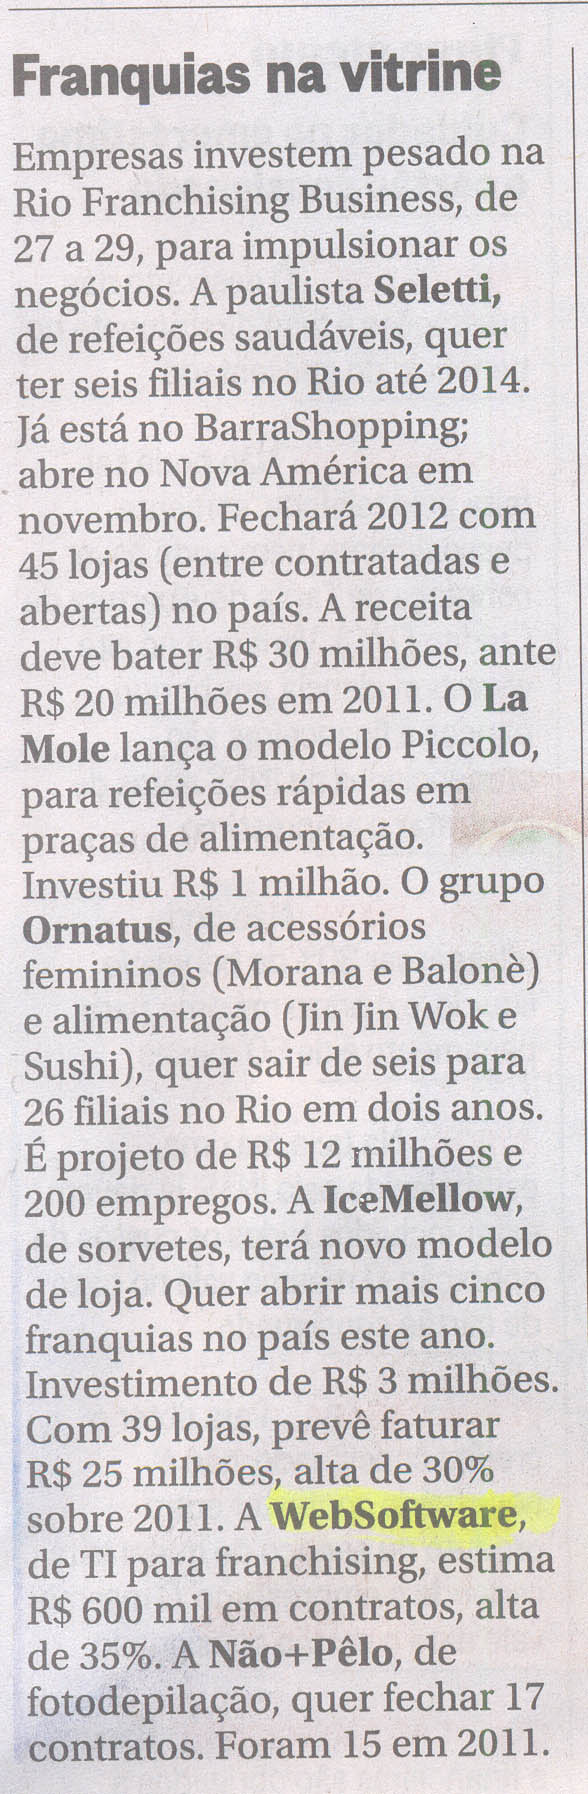 WebSoftware 12 de Setembro de 2012 - Jornal O Globo  - Negócios & Cia - Franquias na Vitrine.jpg